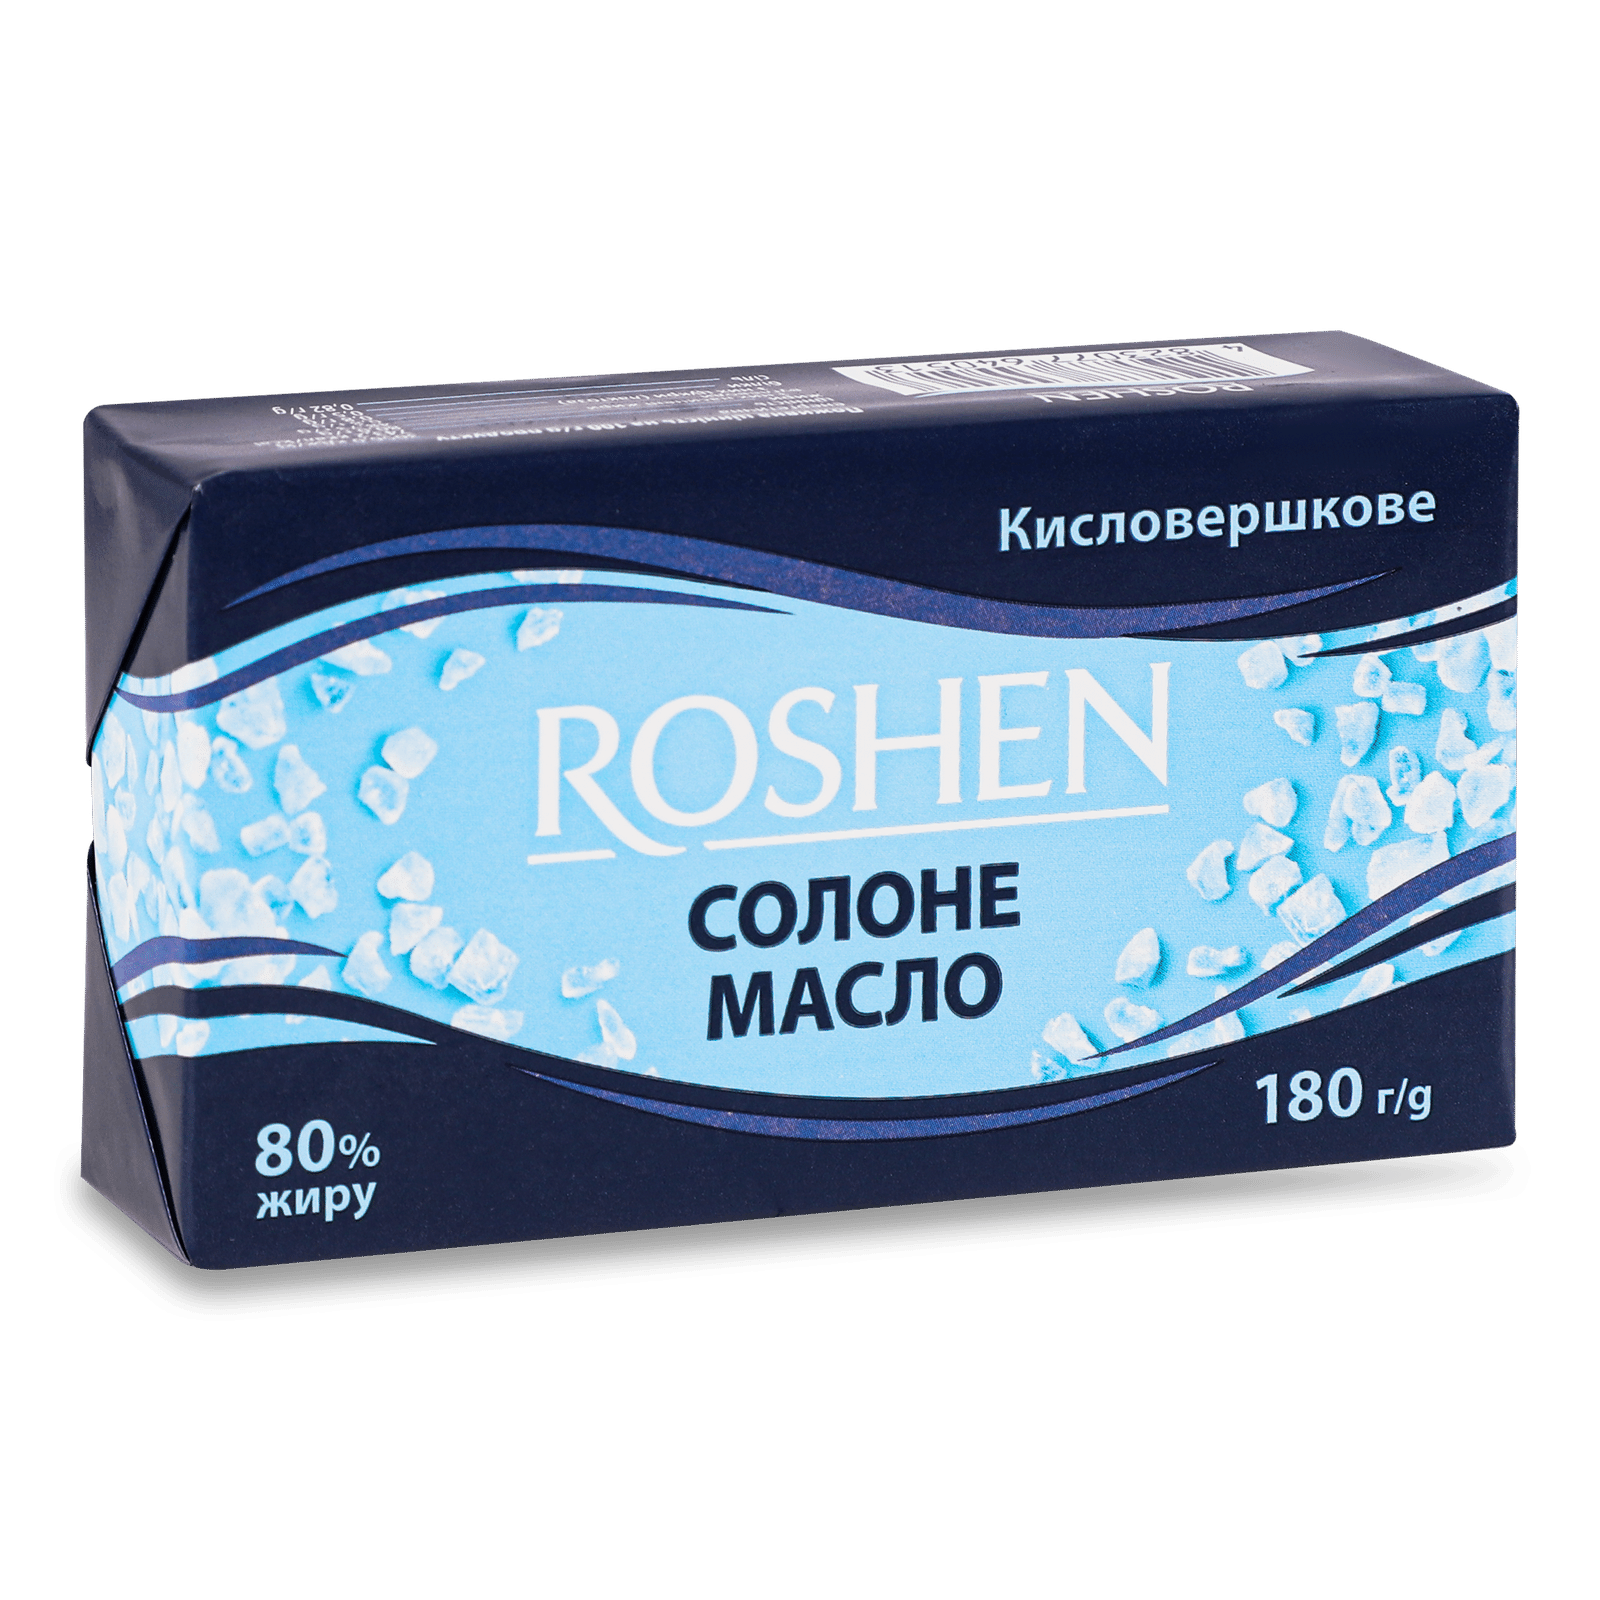 Масло кисловершкове Roshen Солоне 80% - 1